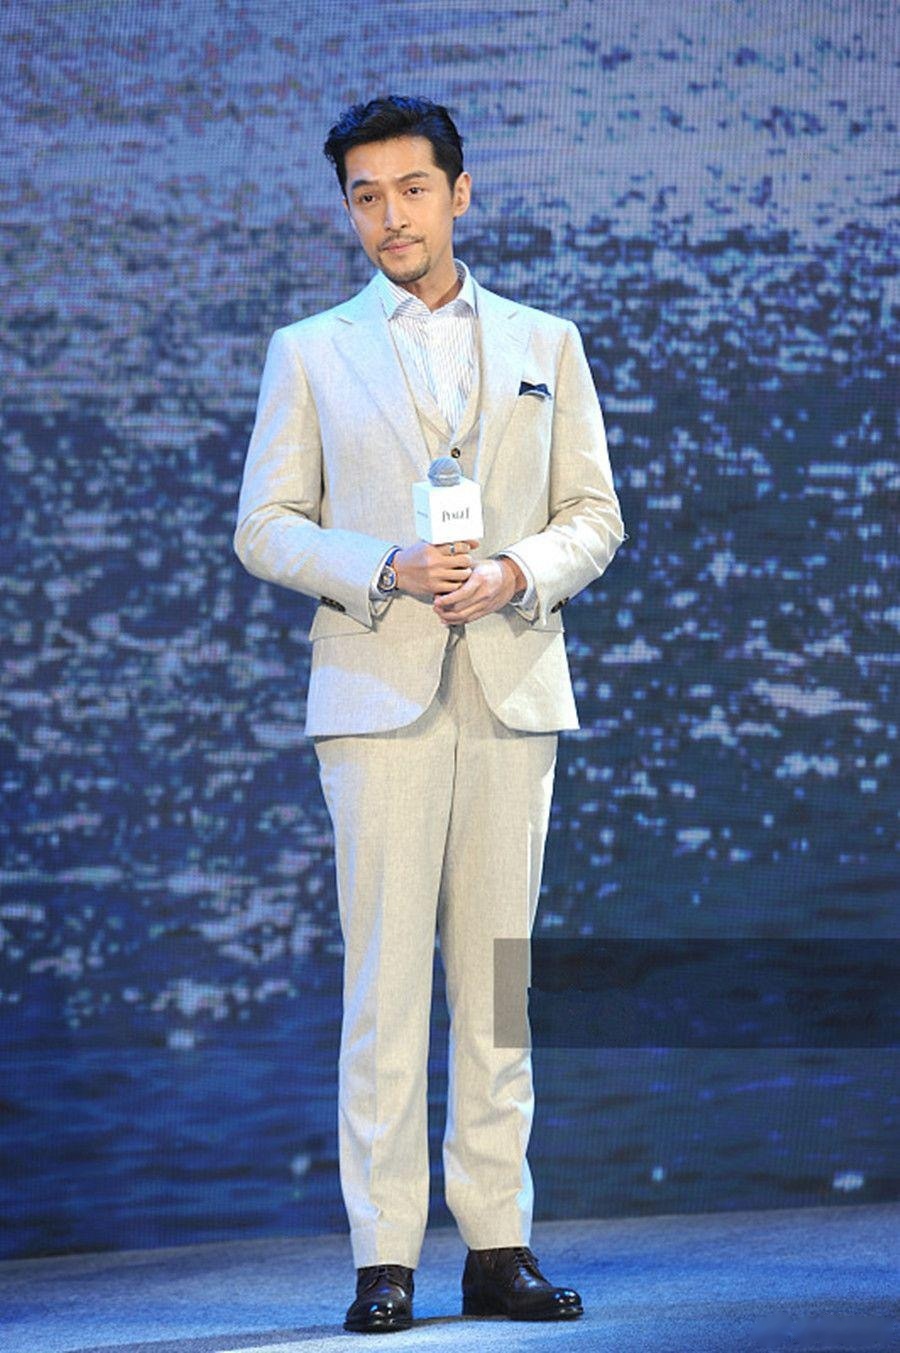 2019年4月10日,胡歌现身上海参加品牌活动,当天他身穿浅色西装内搭